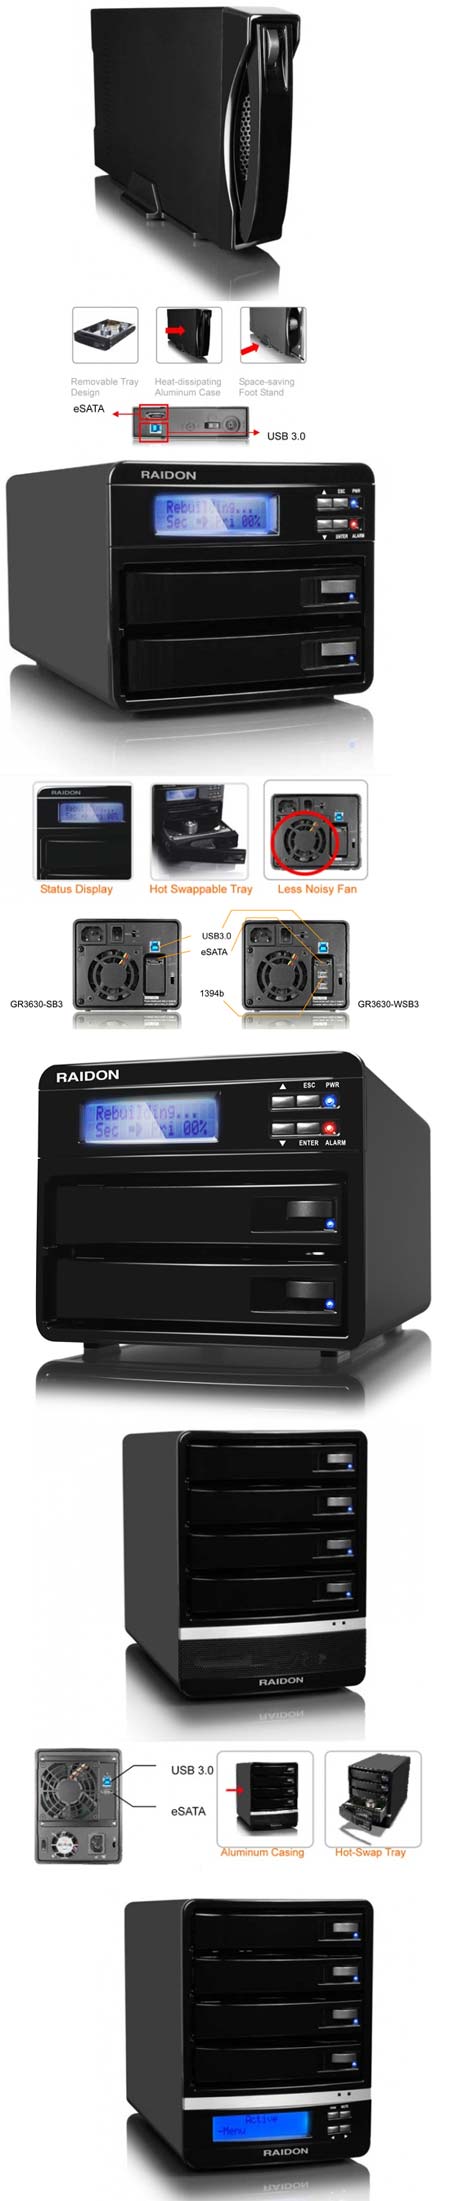 RAIDON GT1650, GR3630 и GT5630